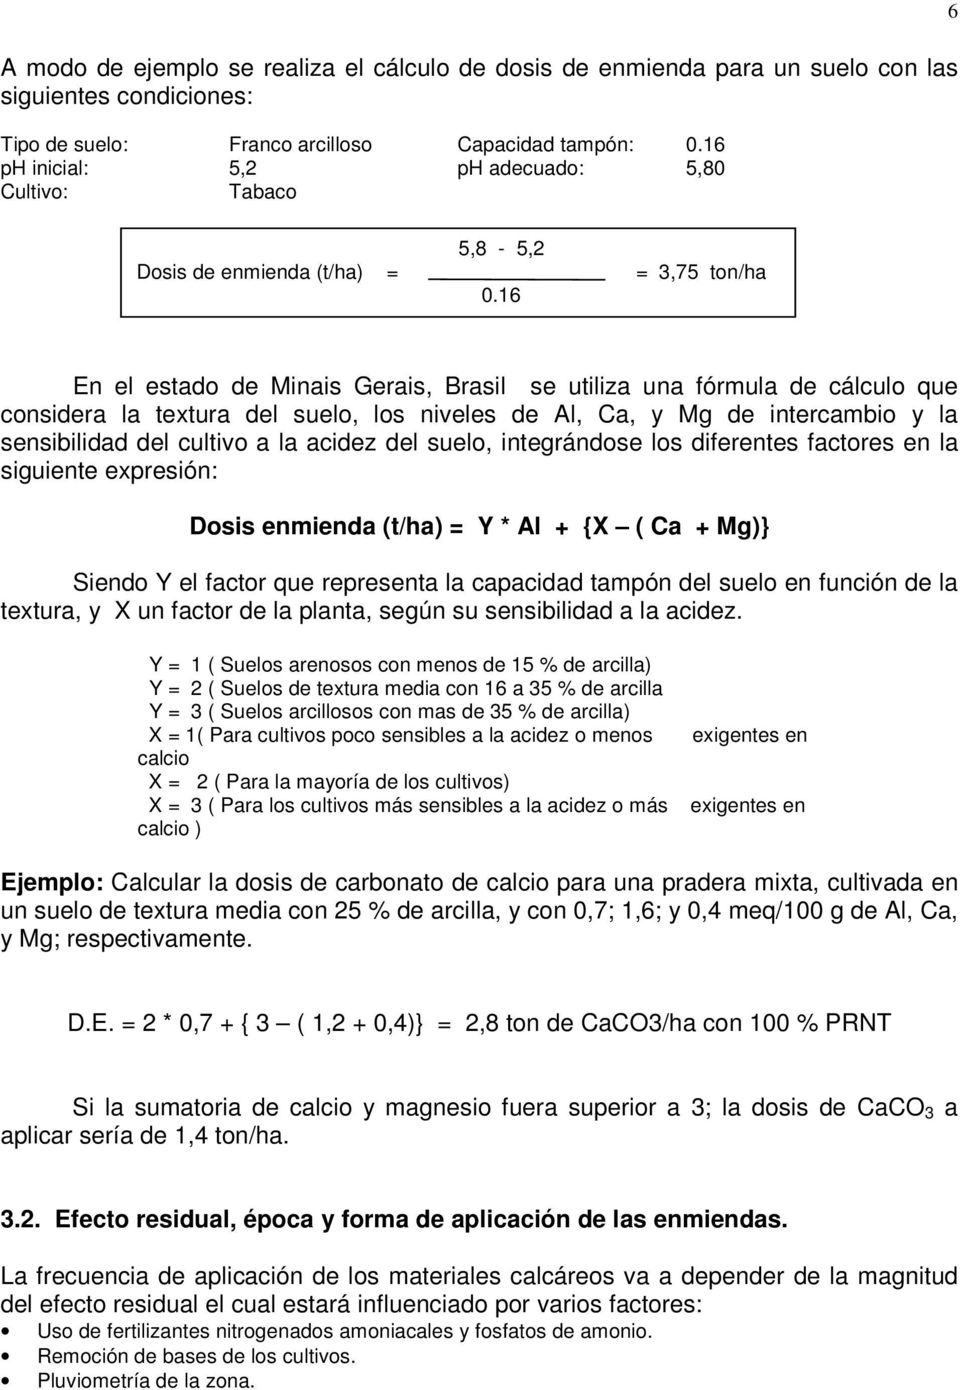 16 6 En el estado de Minais Gerais, Brasil se utiliza una fórmula de cálculo que considera la textura del suelo, los niveles de Al, Ca, y Mg de intercambio y la sensibilidad del cultivo a la acidez